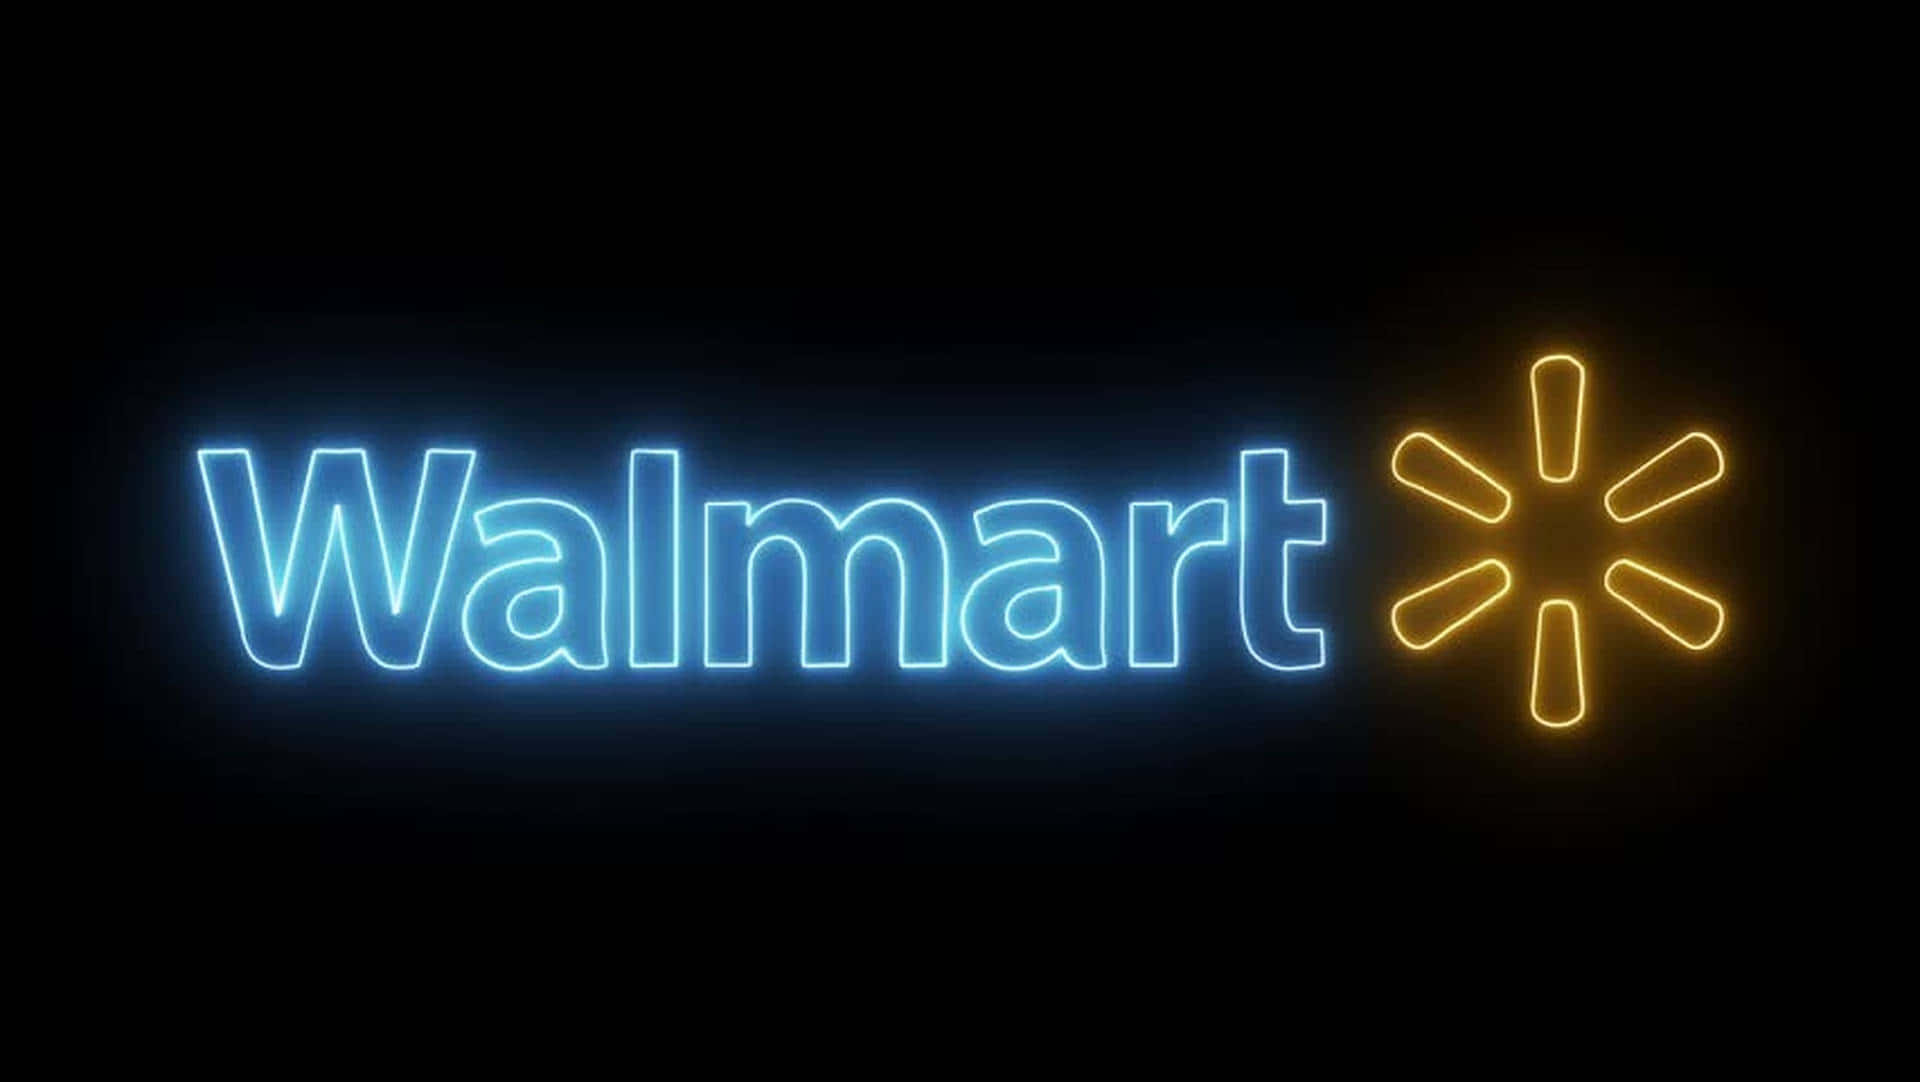 Faishopping Intelligente Con Walmart - La Tua Destinazione Di Shopping A Tutto Tondo